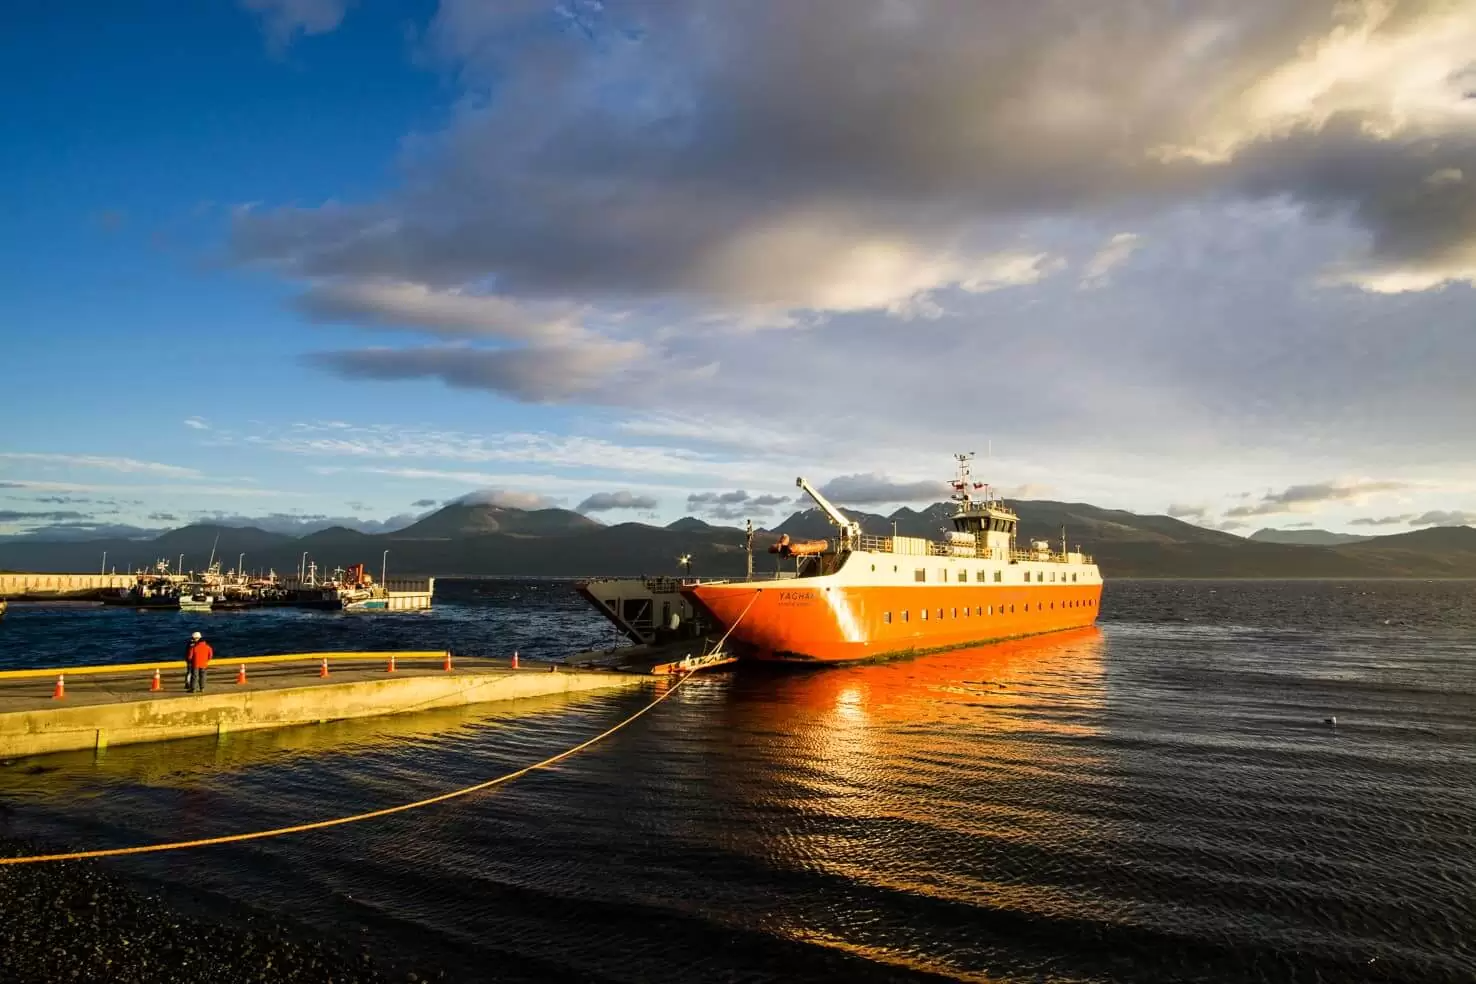 Mỗi ngày hãng DAP Airlines có nhiều chuyến bay từ thành phố của Chile là Punta Arenas trừ chủ nhật. Thời gian bay khoảng 1 tiếng 20 phút. Đi phà từ Punta Arenas đến Puerto Williams lâu hơn, mất 33 tiếng nhưng bù lại được ngắm cảnh thiên nhiên của eo biển Magellan.